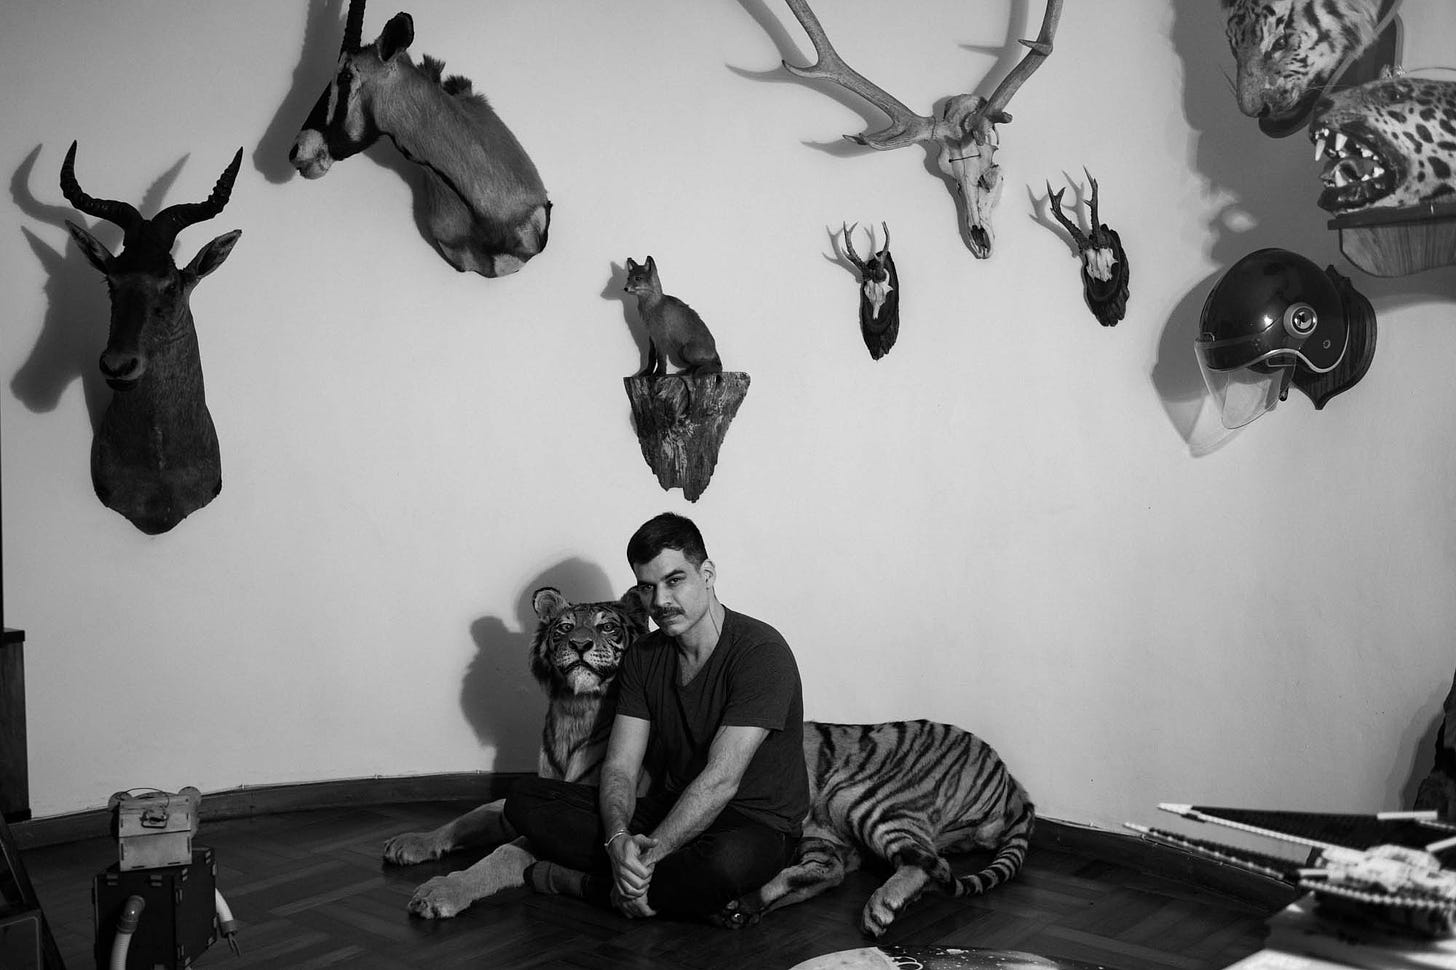 iamgem em preto e branco mostra homem sentado numa sala cercado de animais espalhados como uma onça e uma raposa, ele vesta ecalça e camiseta preta e olha diretamente para a câmera.